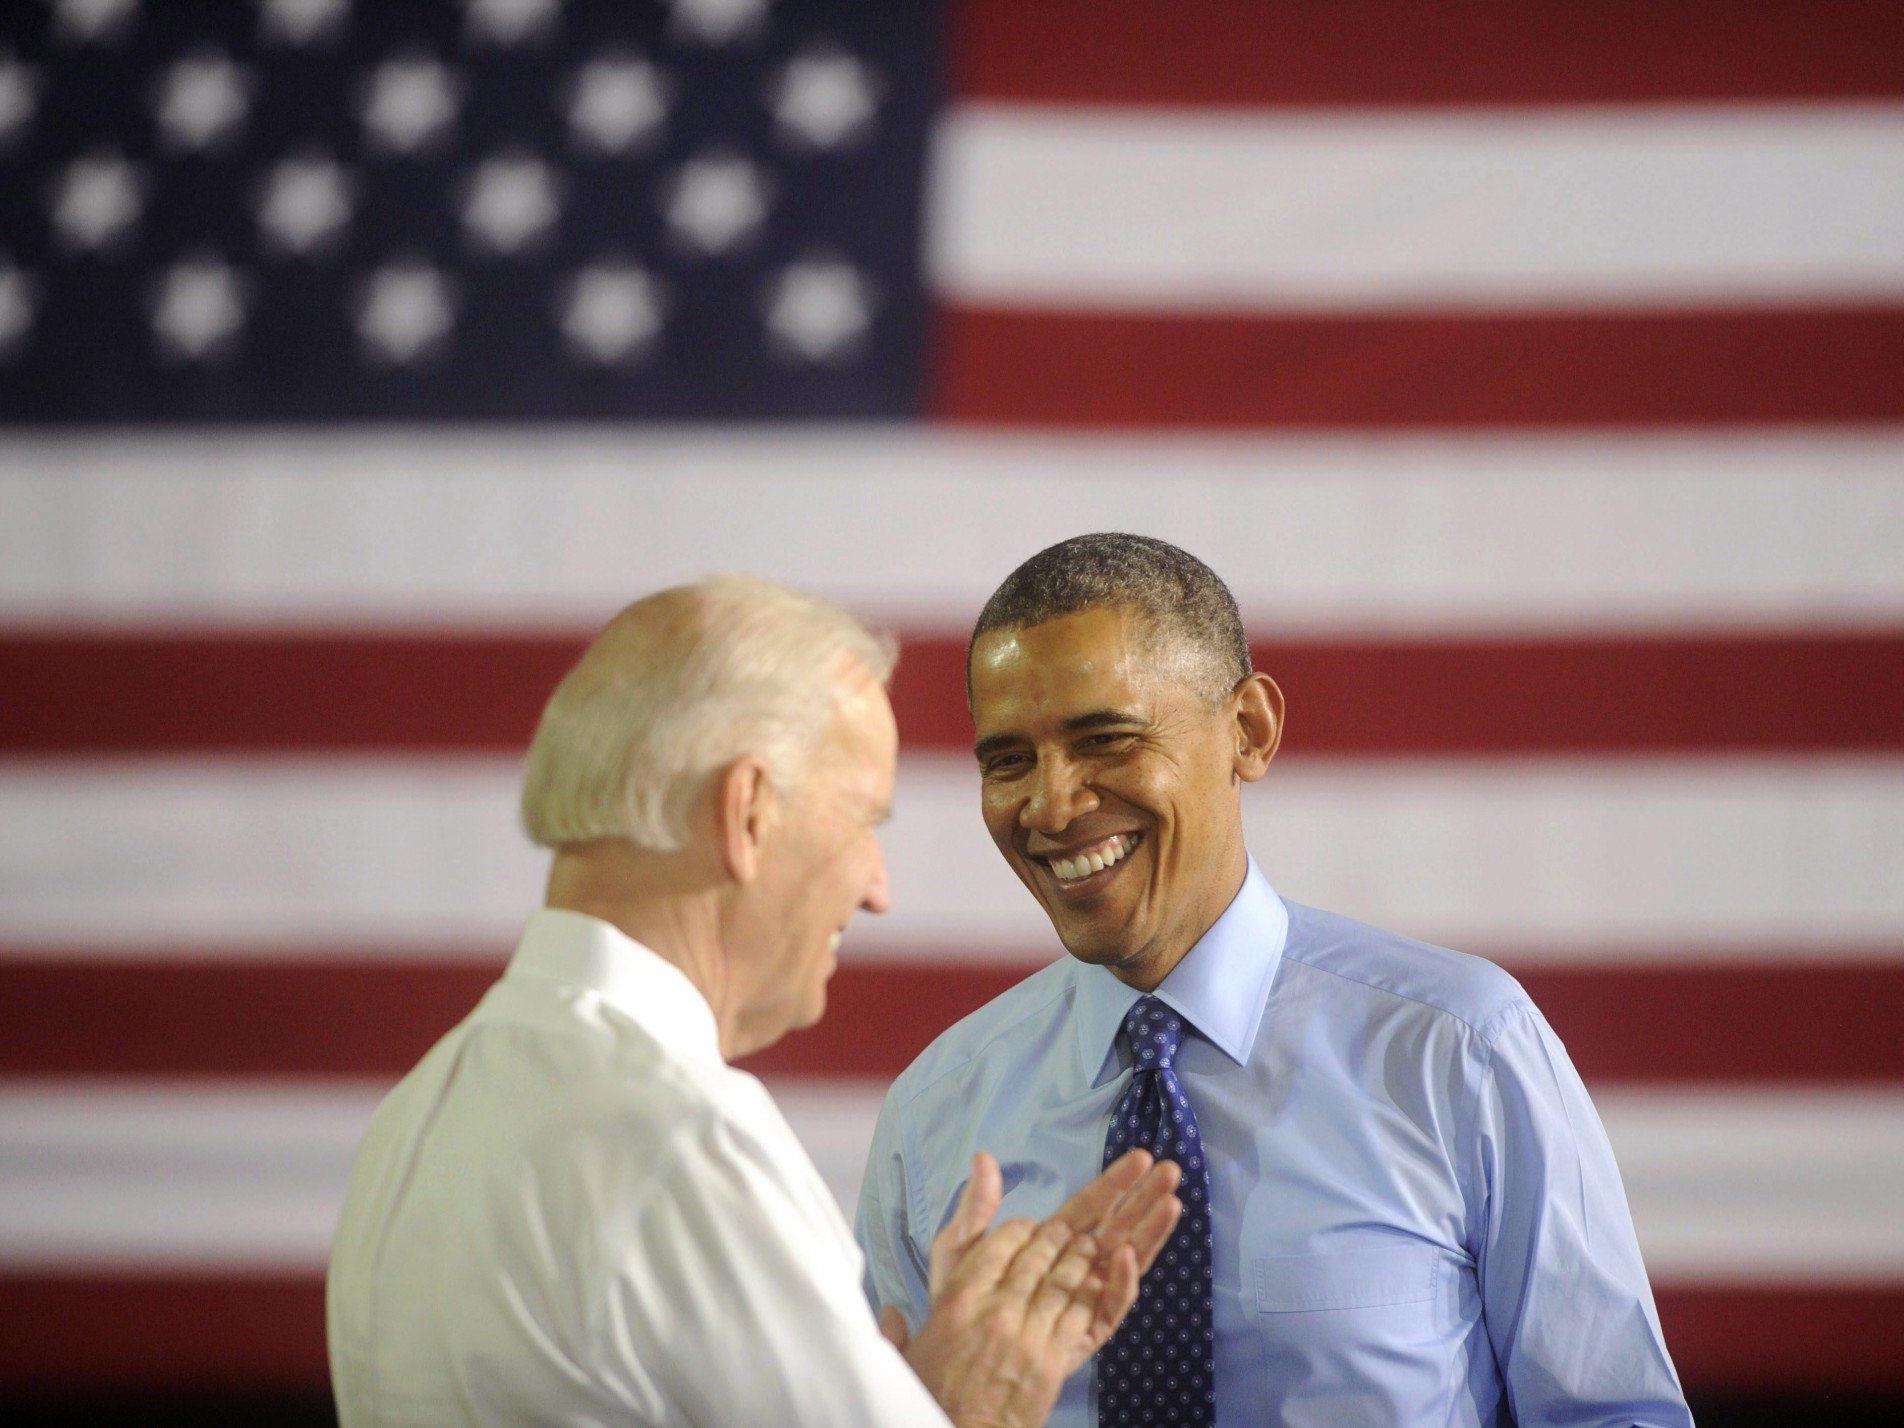 Barack Obama und Joe Biden veröffentlichen Selfie auf Instagram